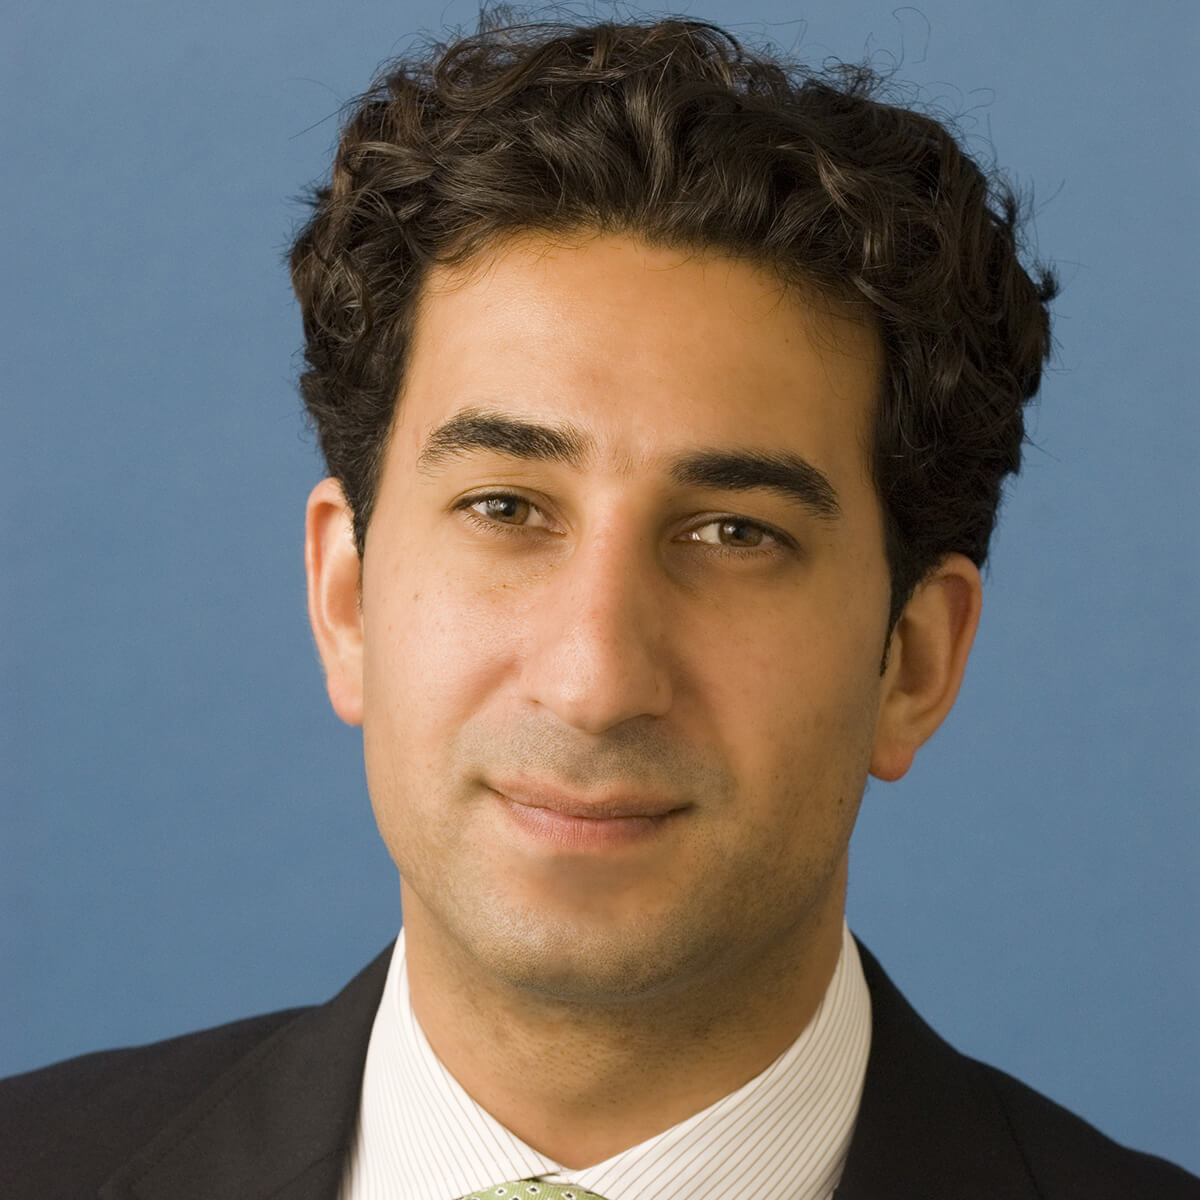 Photo of Karim Sadjadpour wearing a suit